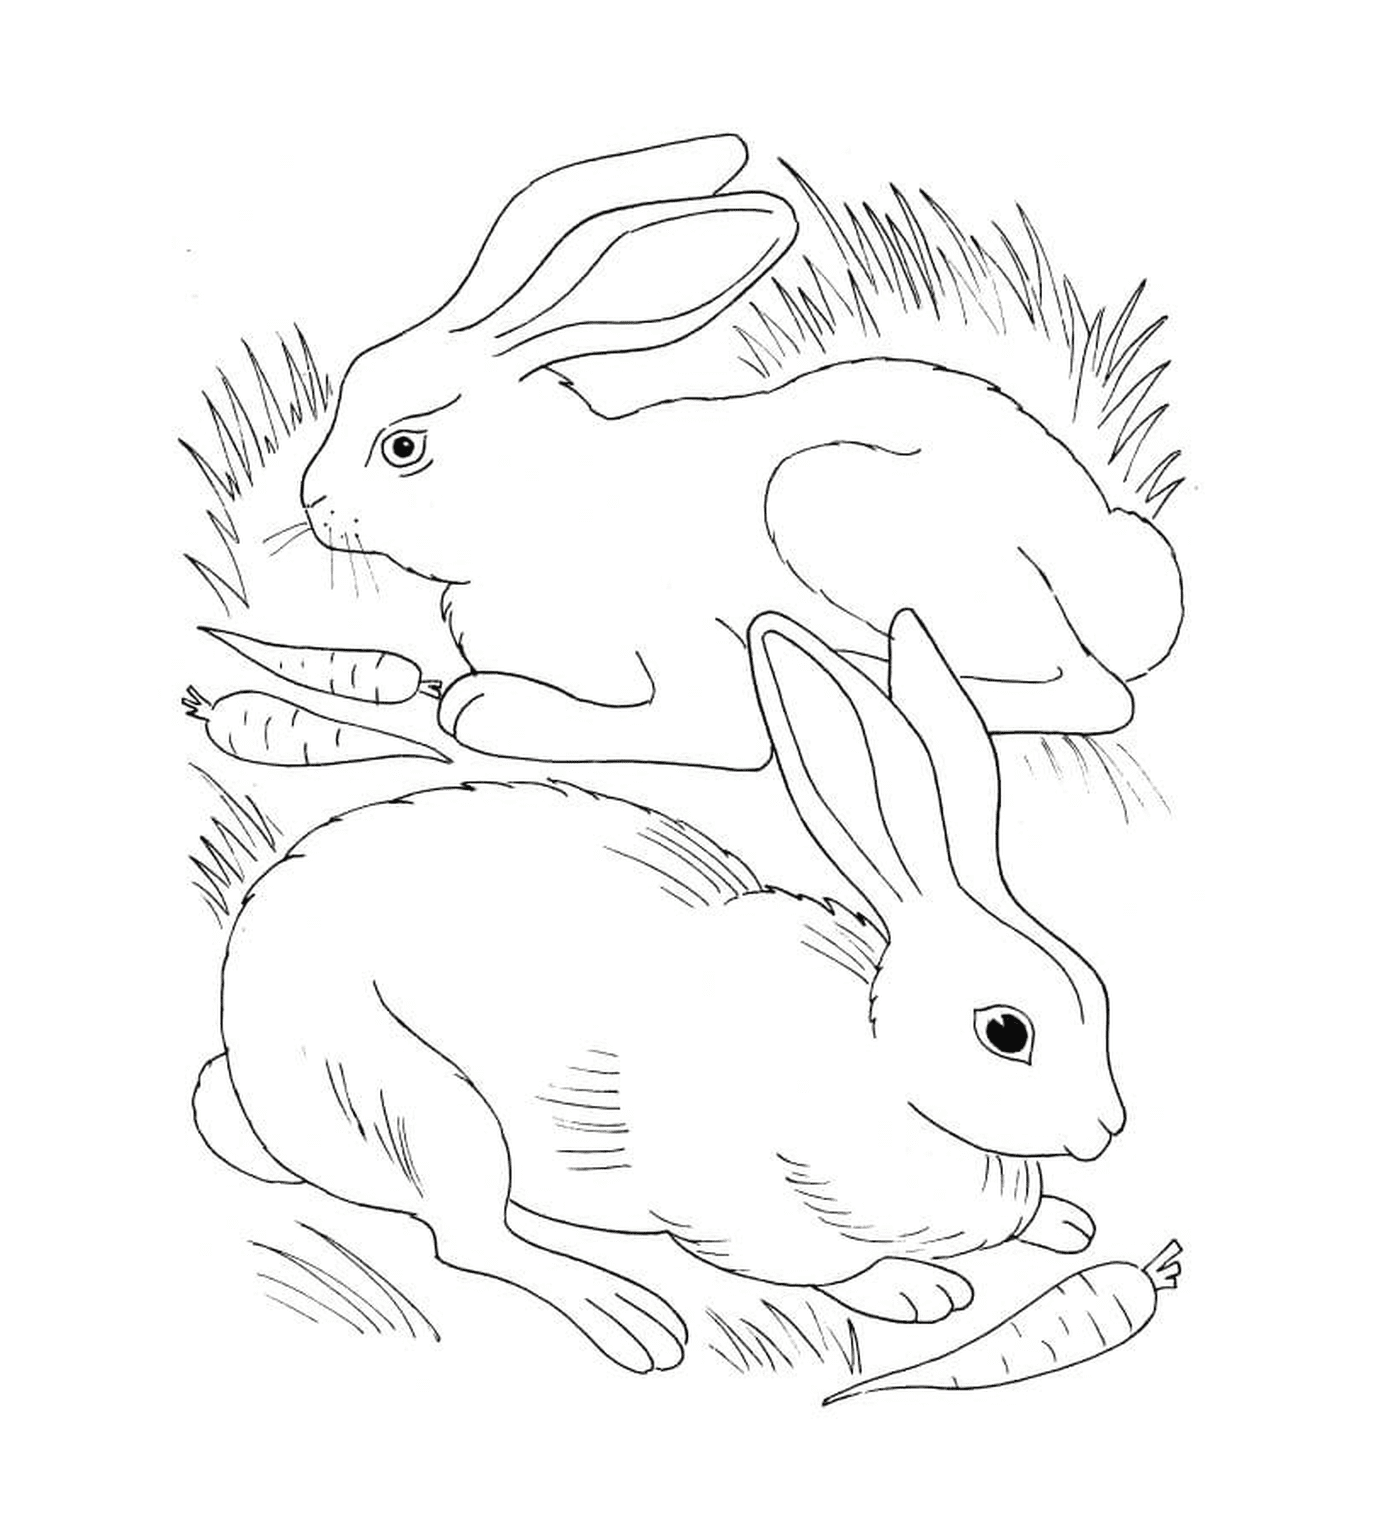  兔子和兔子吃胡萝卜 